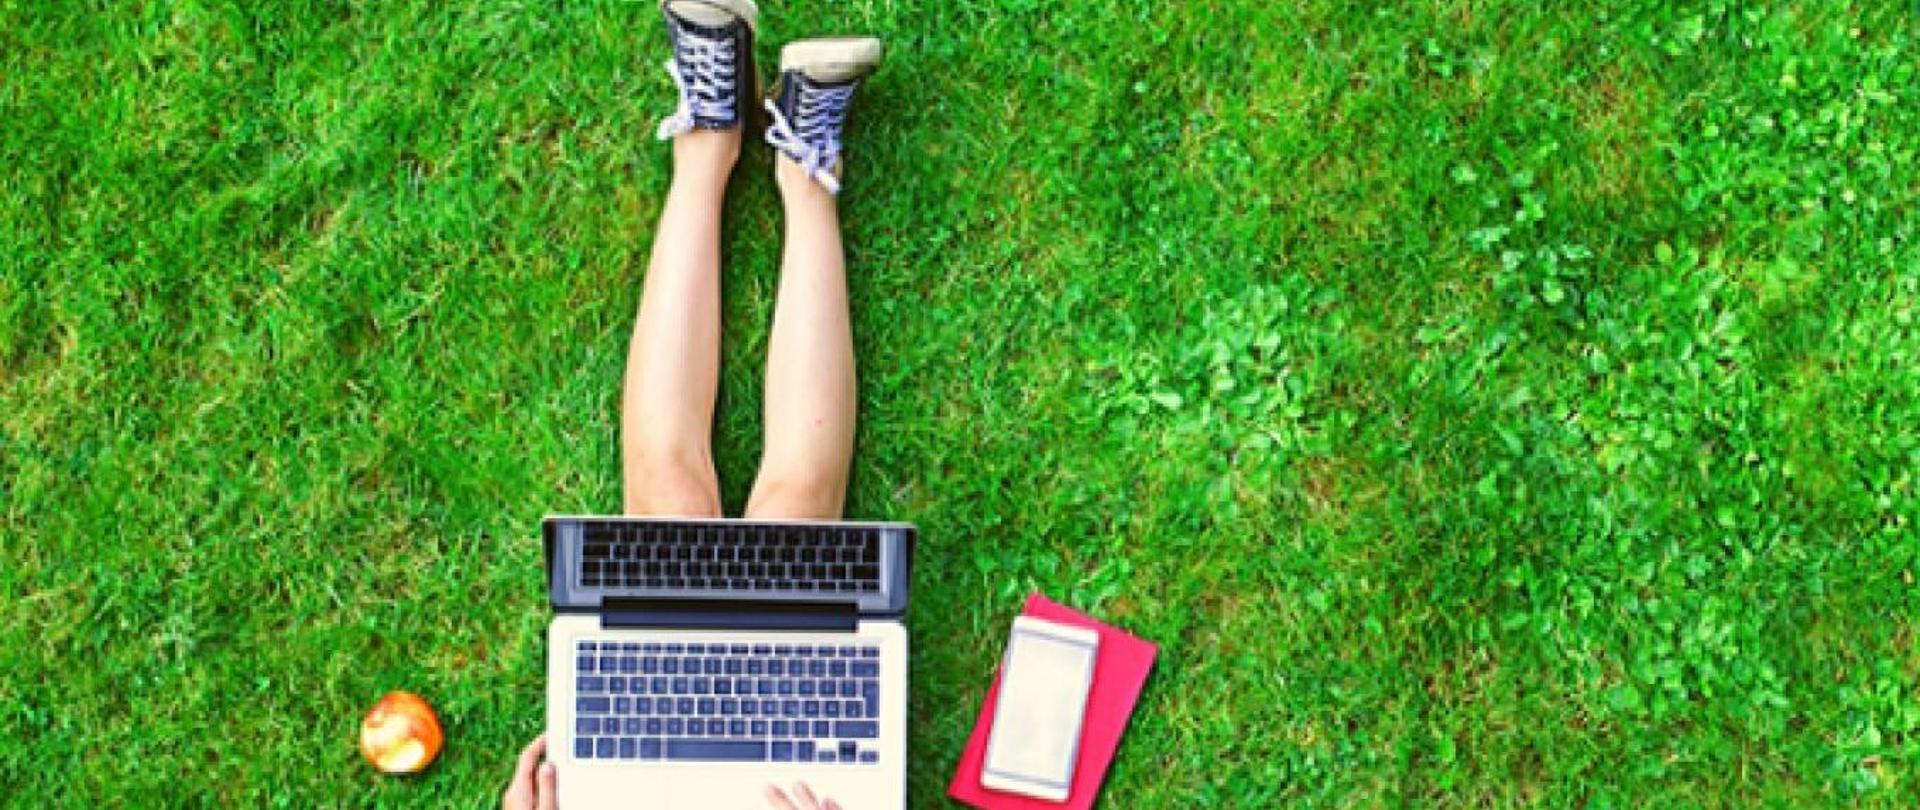 dziecko siedzi z laptopem na trawie. obok jabłko i notatnik